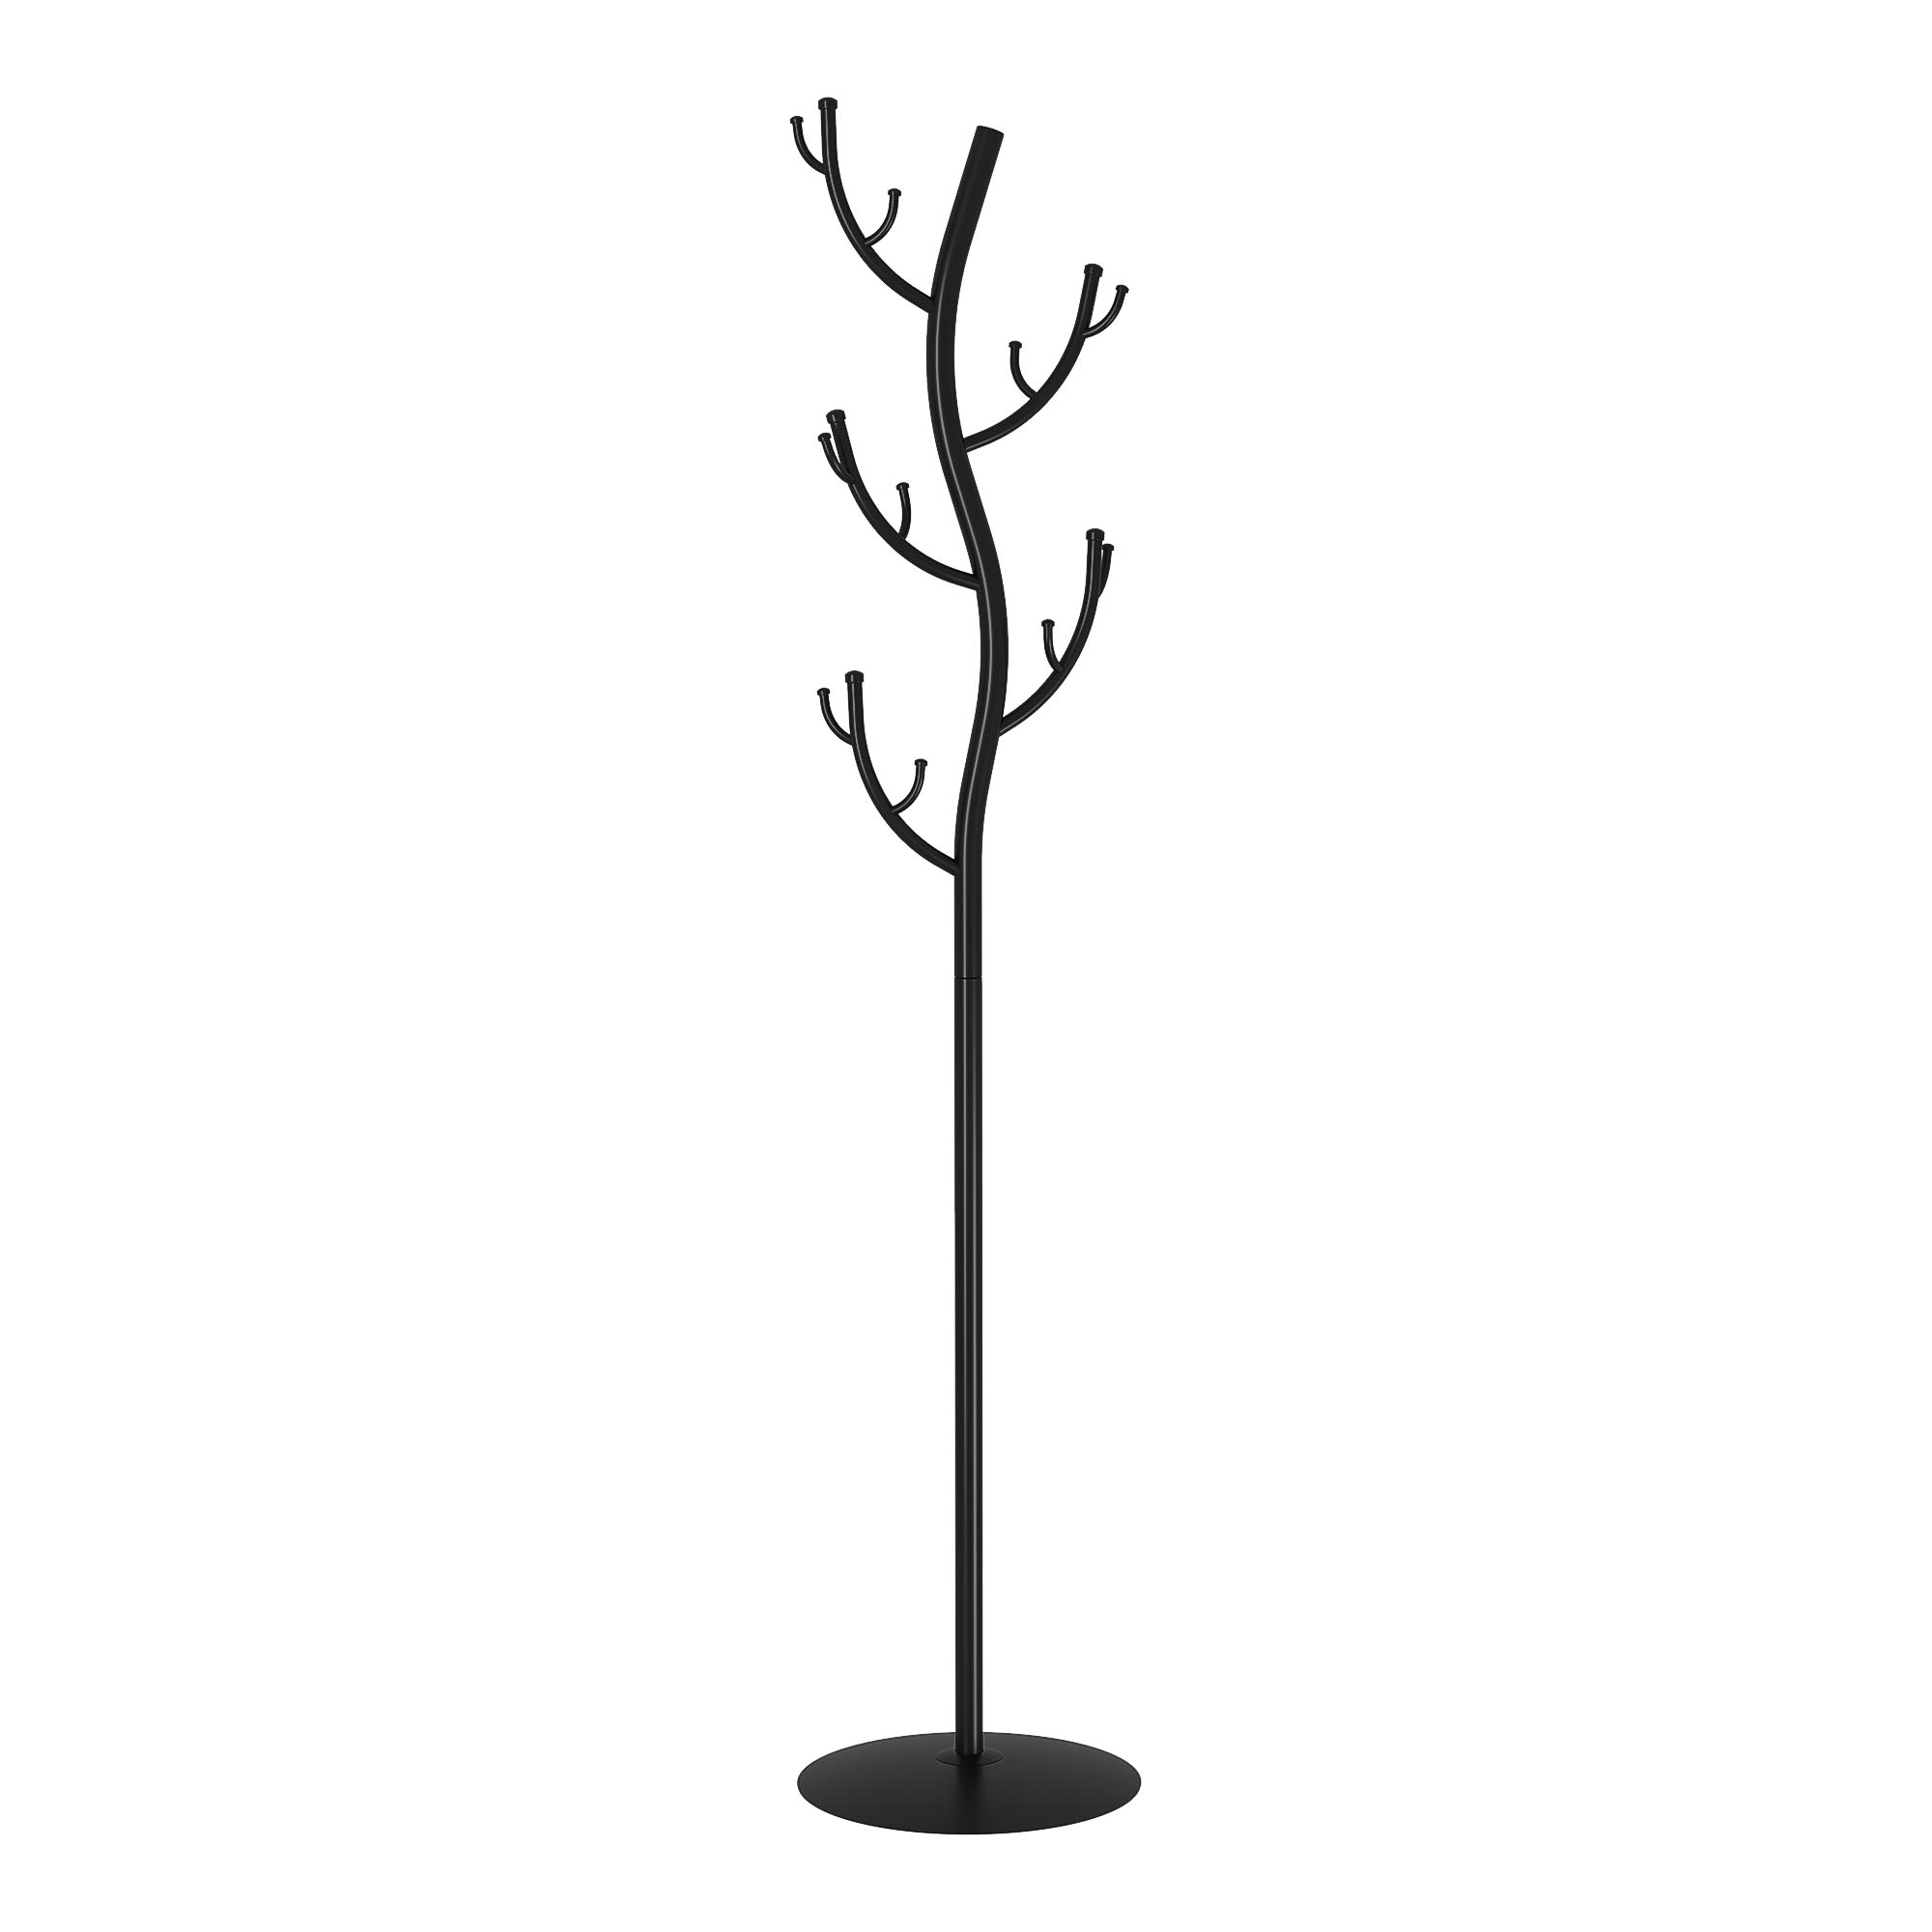 Вешалка напольная ЗМИ Дерево черная 37,5х37,5х181 см вешалка плечико грингрант 40 см натурального а